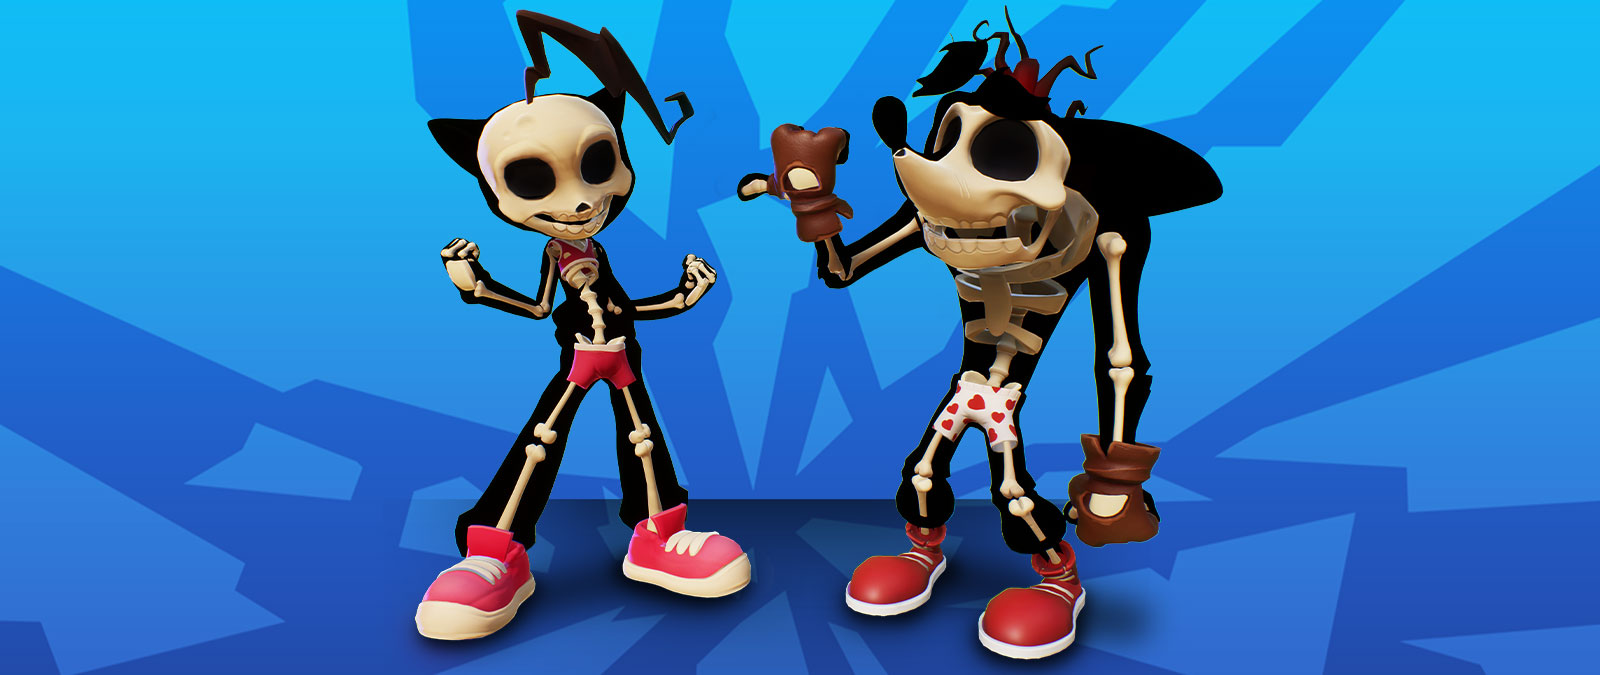 Οι σκελετοί των Crash και Coco με τα εσώρουχά τους.